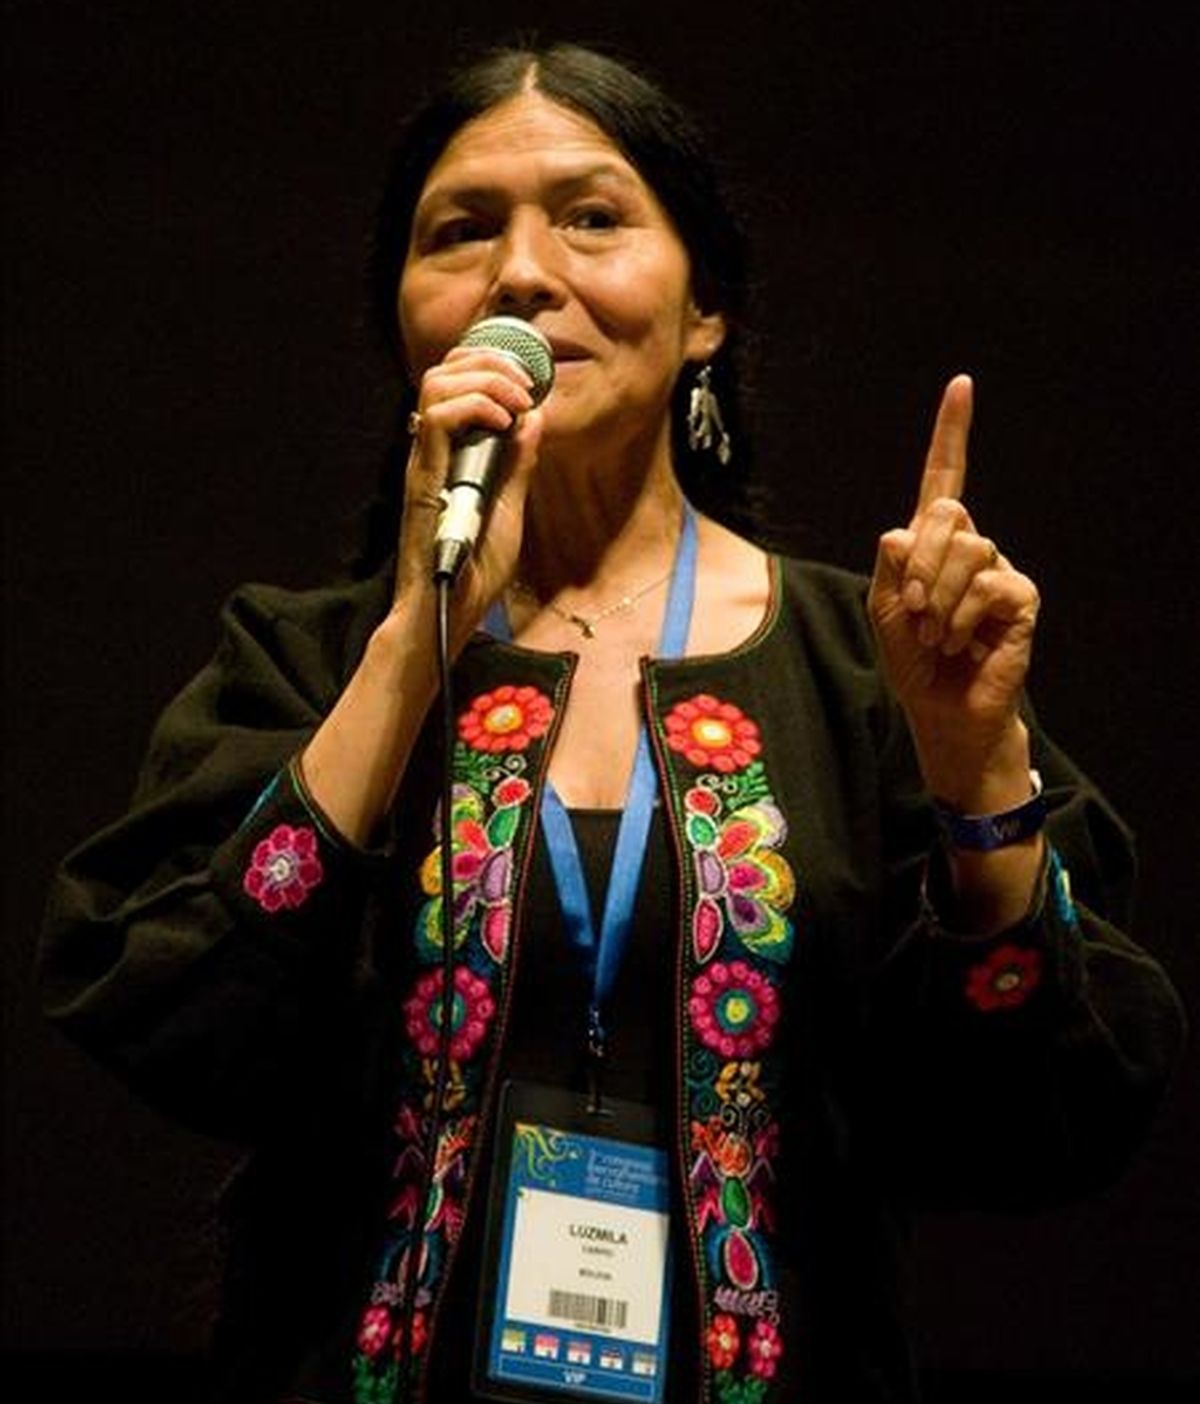 La cantante peruana Susana Baca se definió como una "artista resistente" porque en sus inicios le tocó surgir e insistir para que su música fuera valorada. EFE